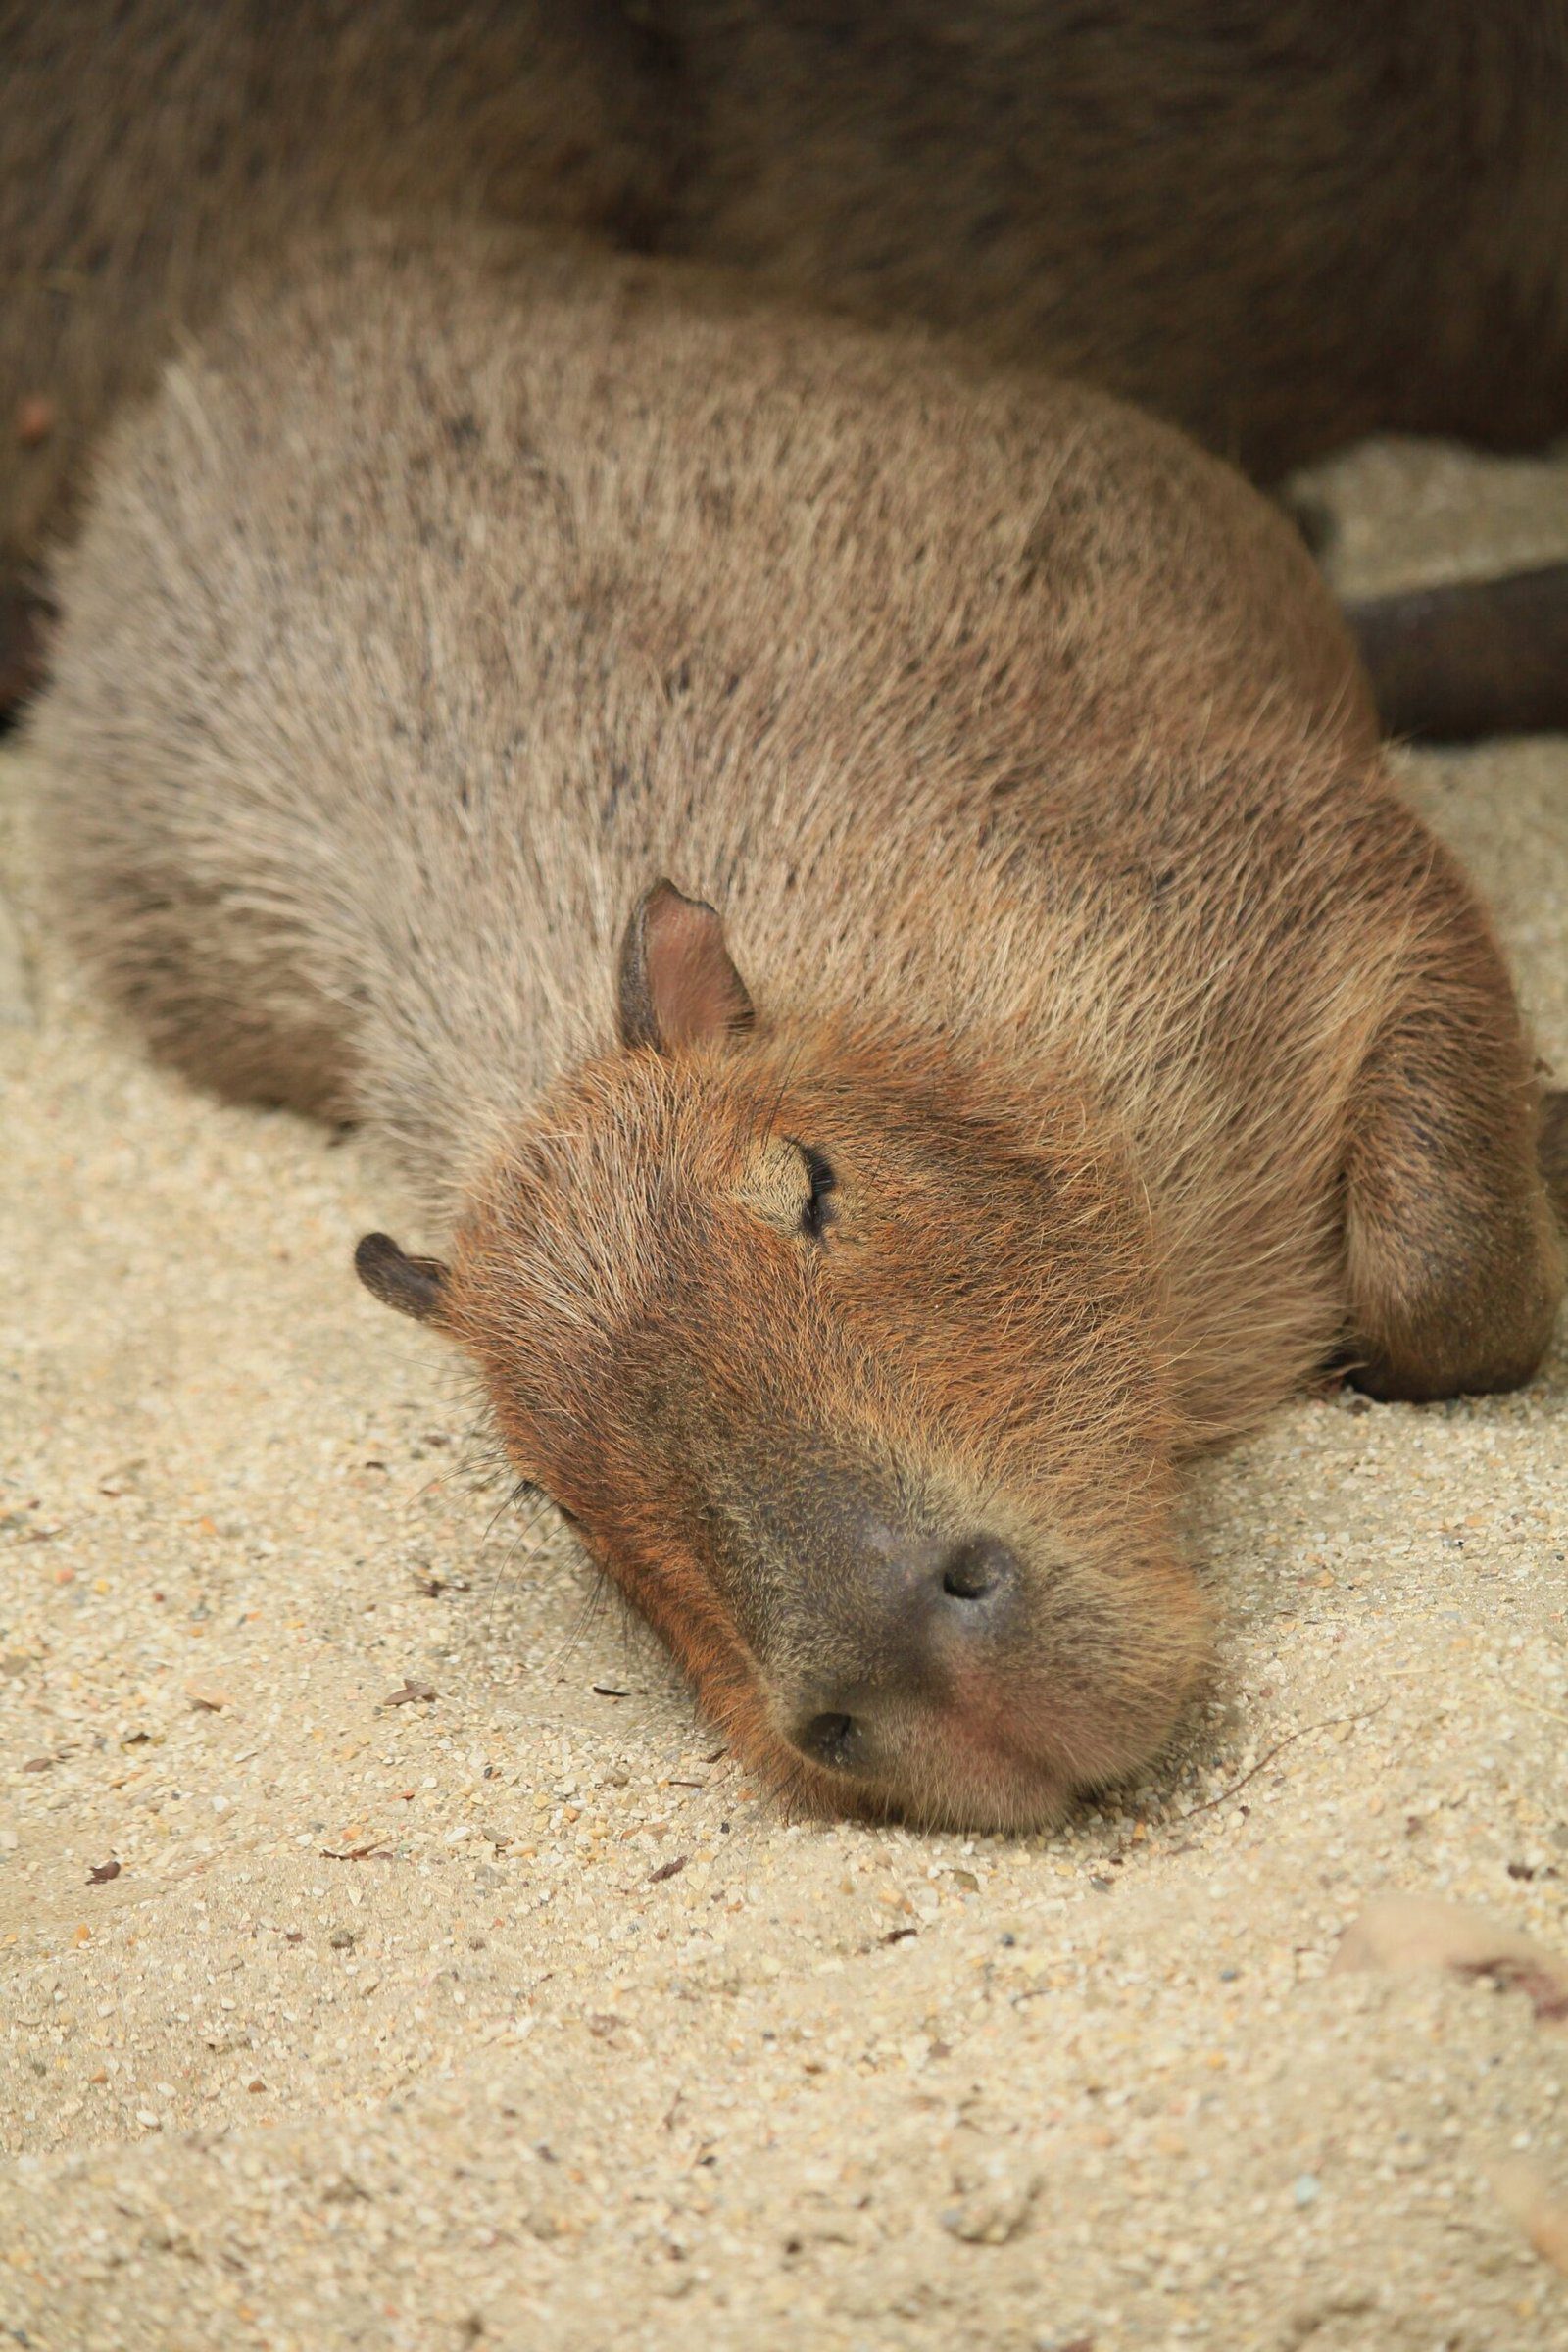 The Life of a Capybara